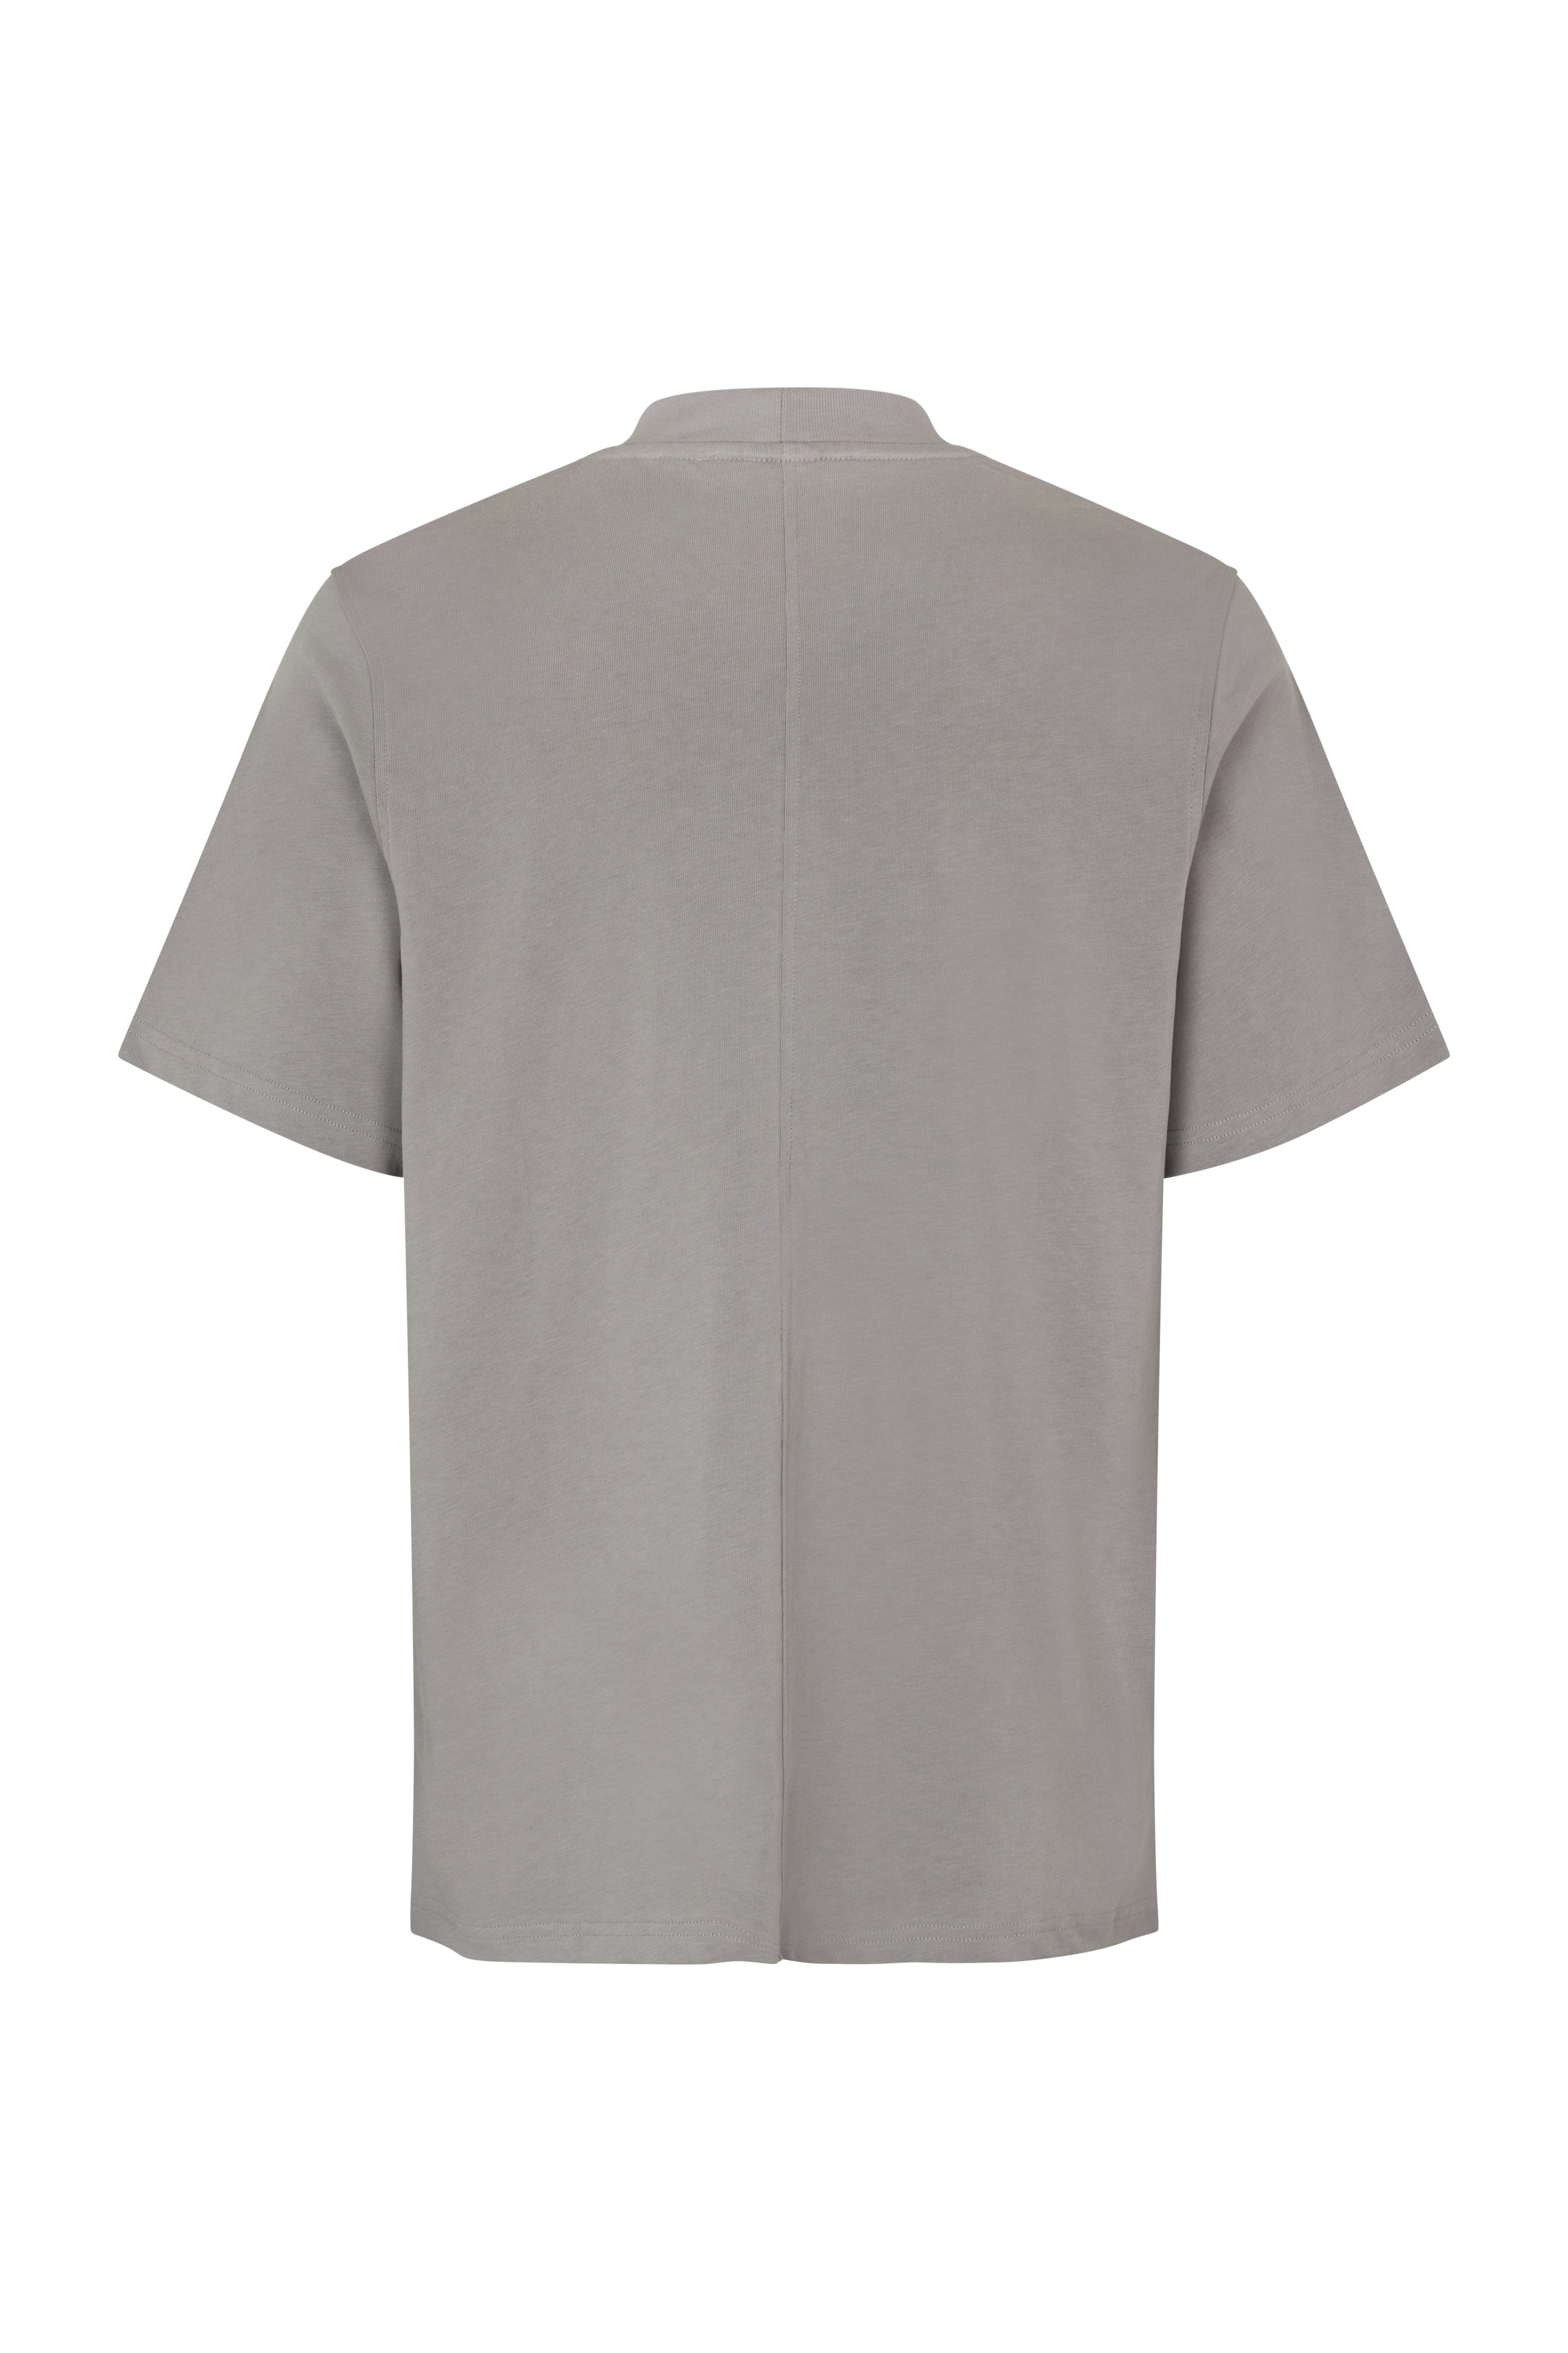 Norsbro T-Shirt - Ultimate Gray